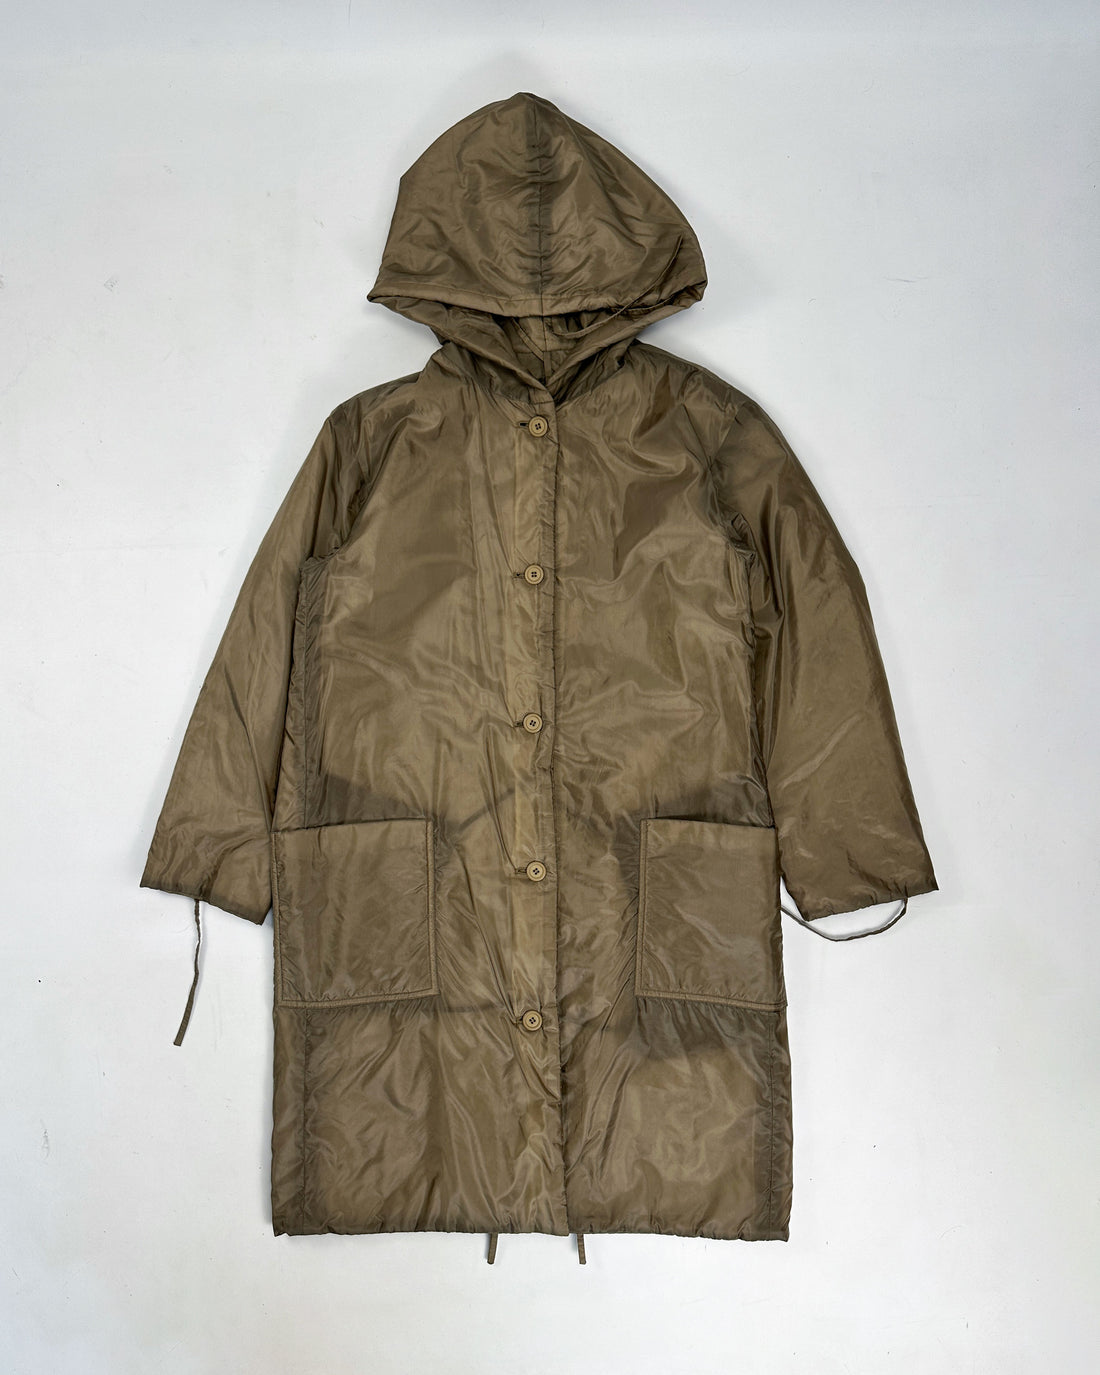 Issey Miyake Windcoat 2-in-1 Full Zip Brown Jacket 2000's